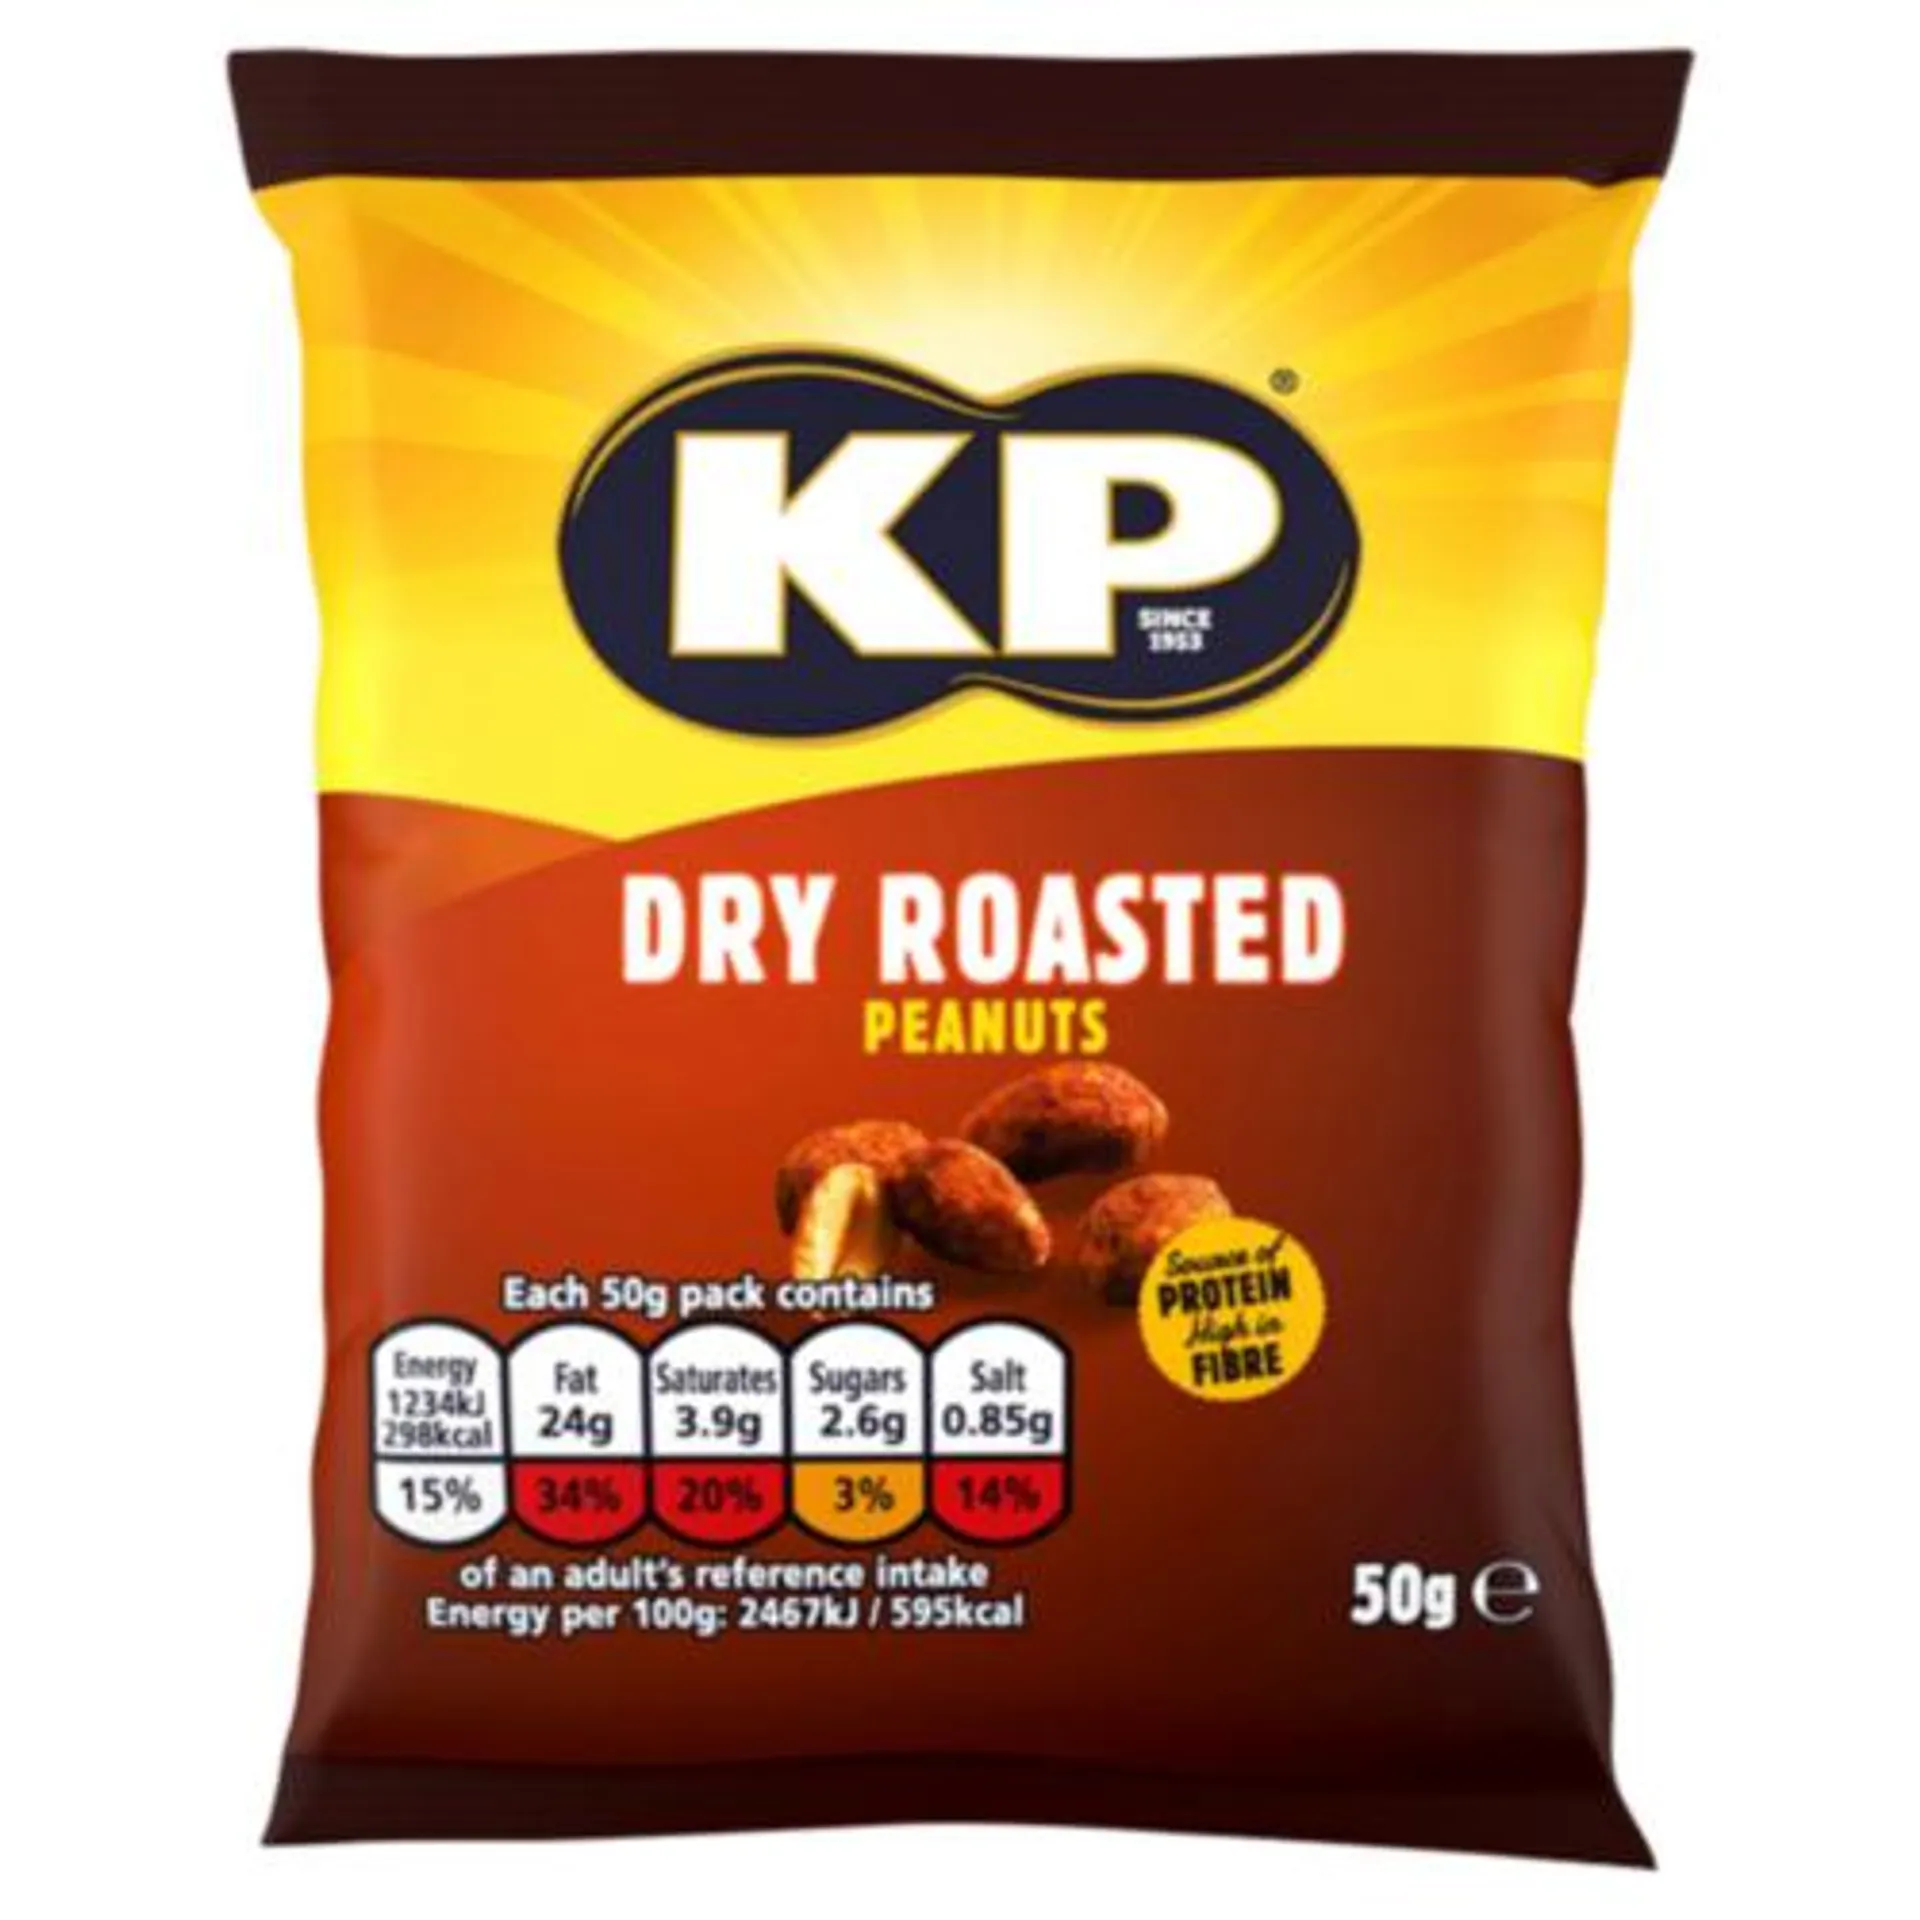 KP Dry Roasted Peanuts Bag